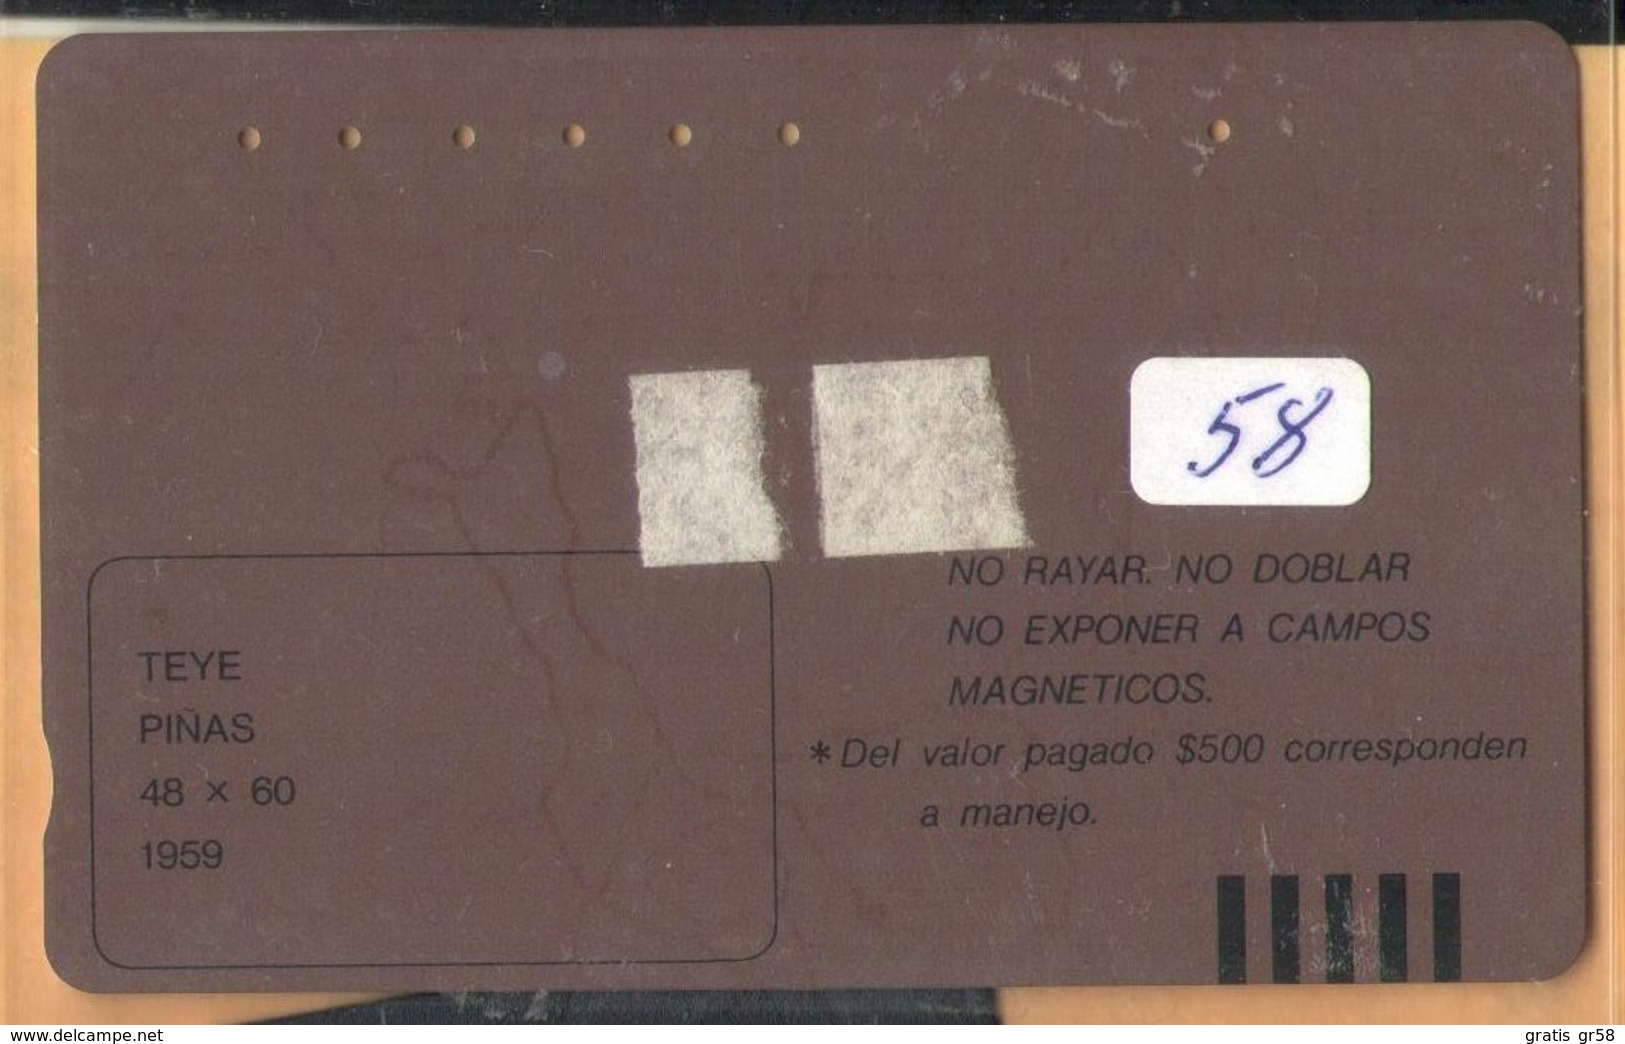 Colombia - CO-MT-58, Tamura, Pinas, Teye, Art, 15,500 $, 10.000ex, Used As Scan - Kolumbien